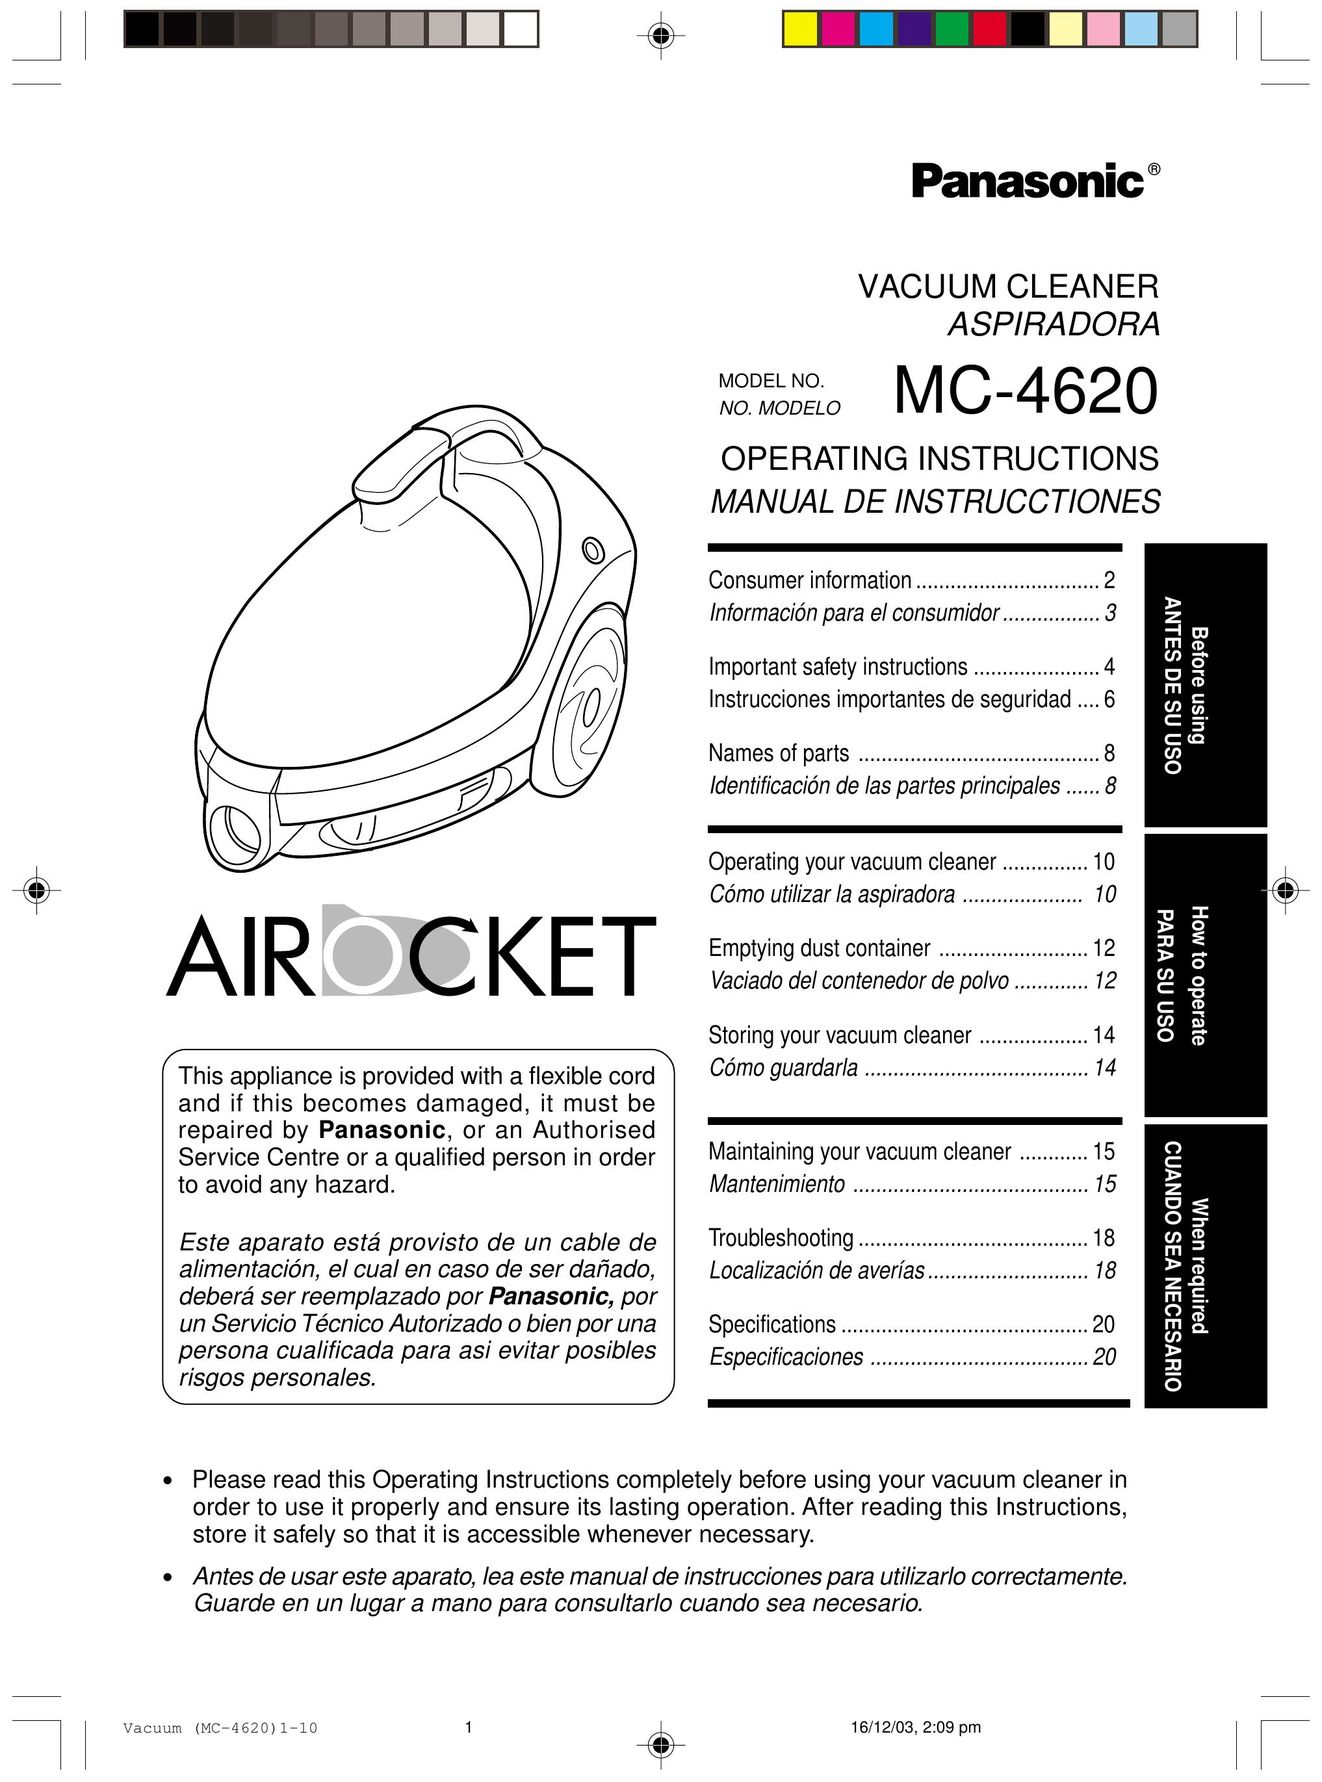 Panasonic MC-4620 Vacuum Cleaner User Manual